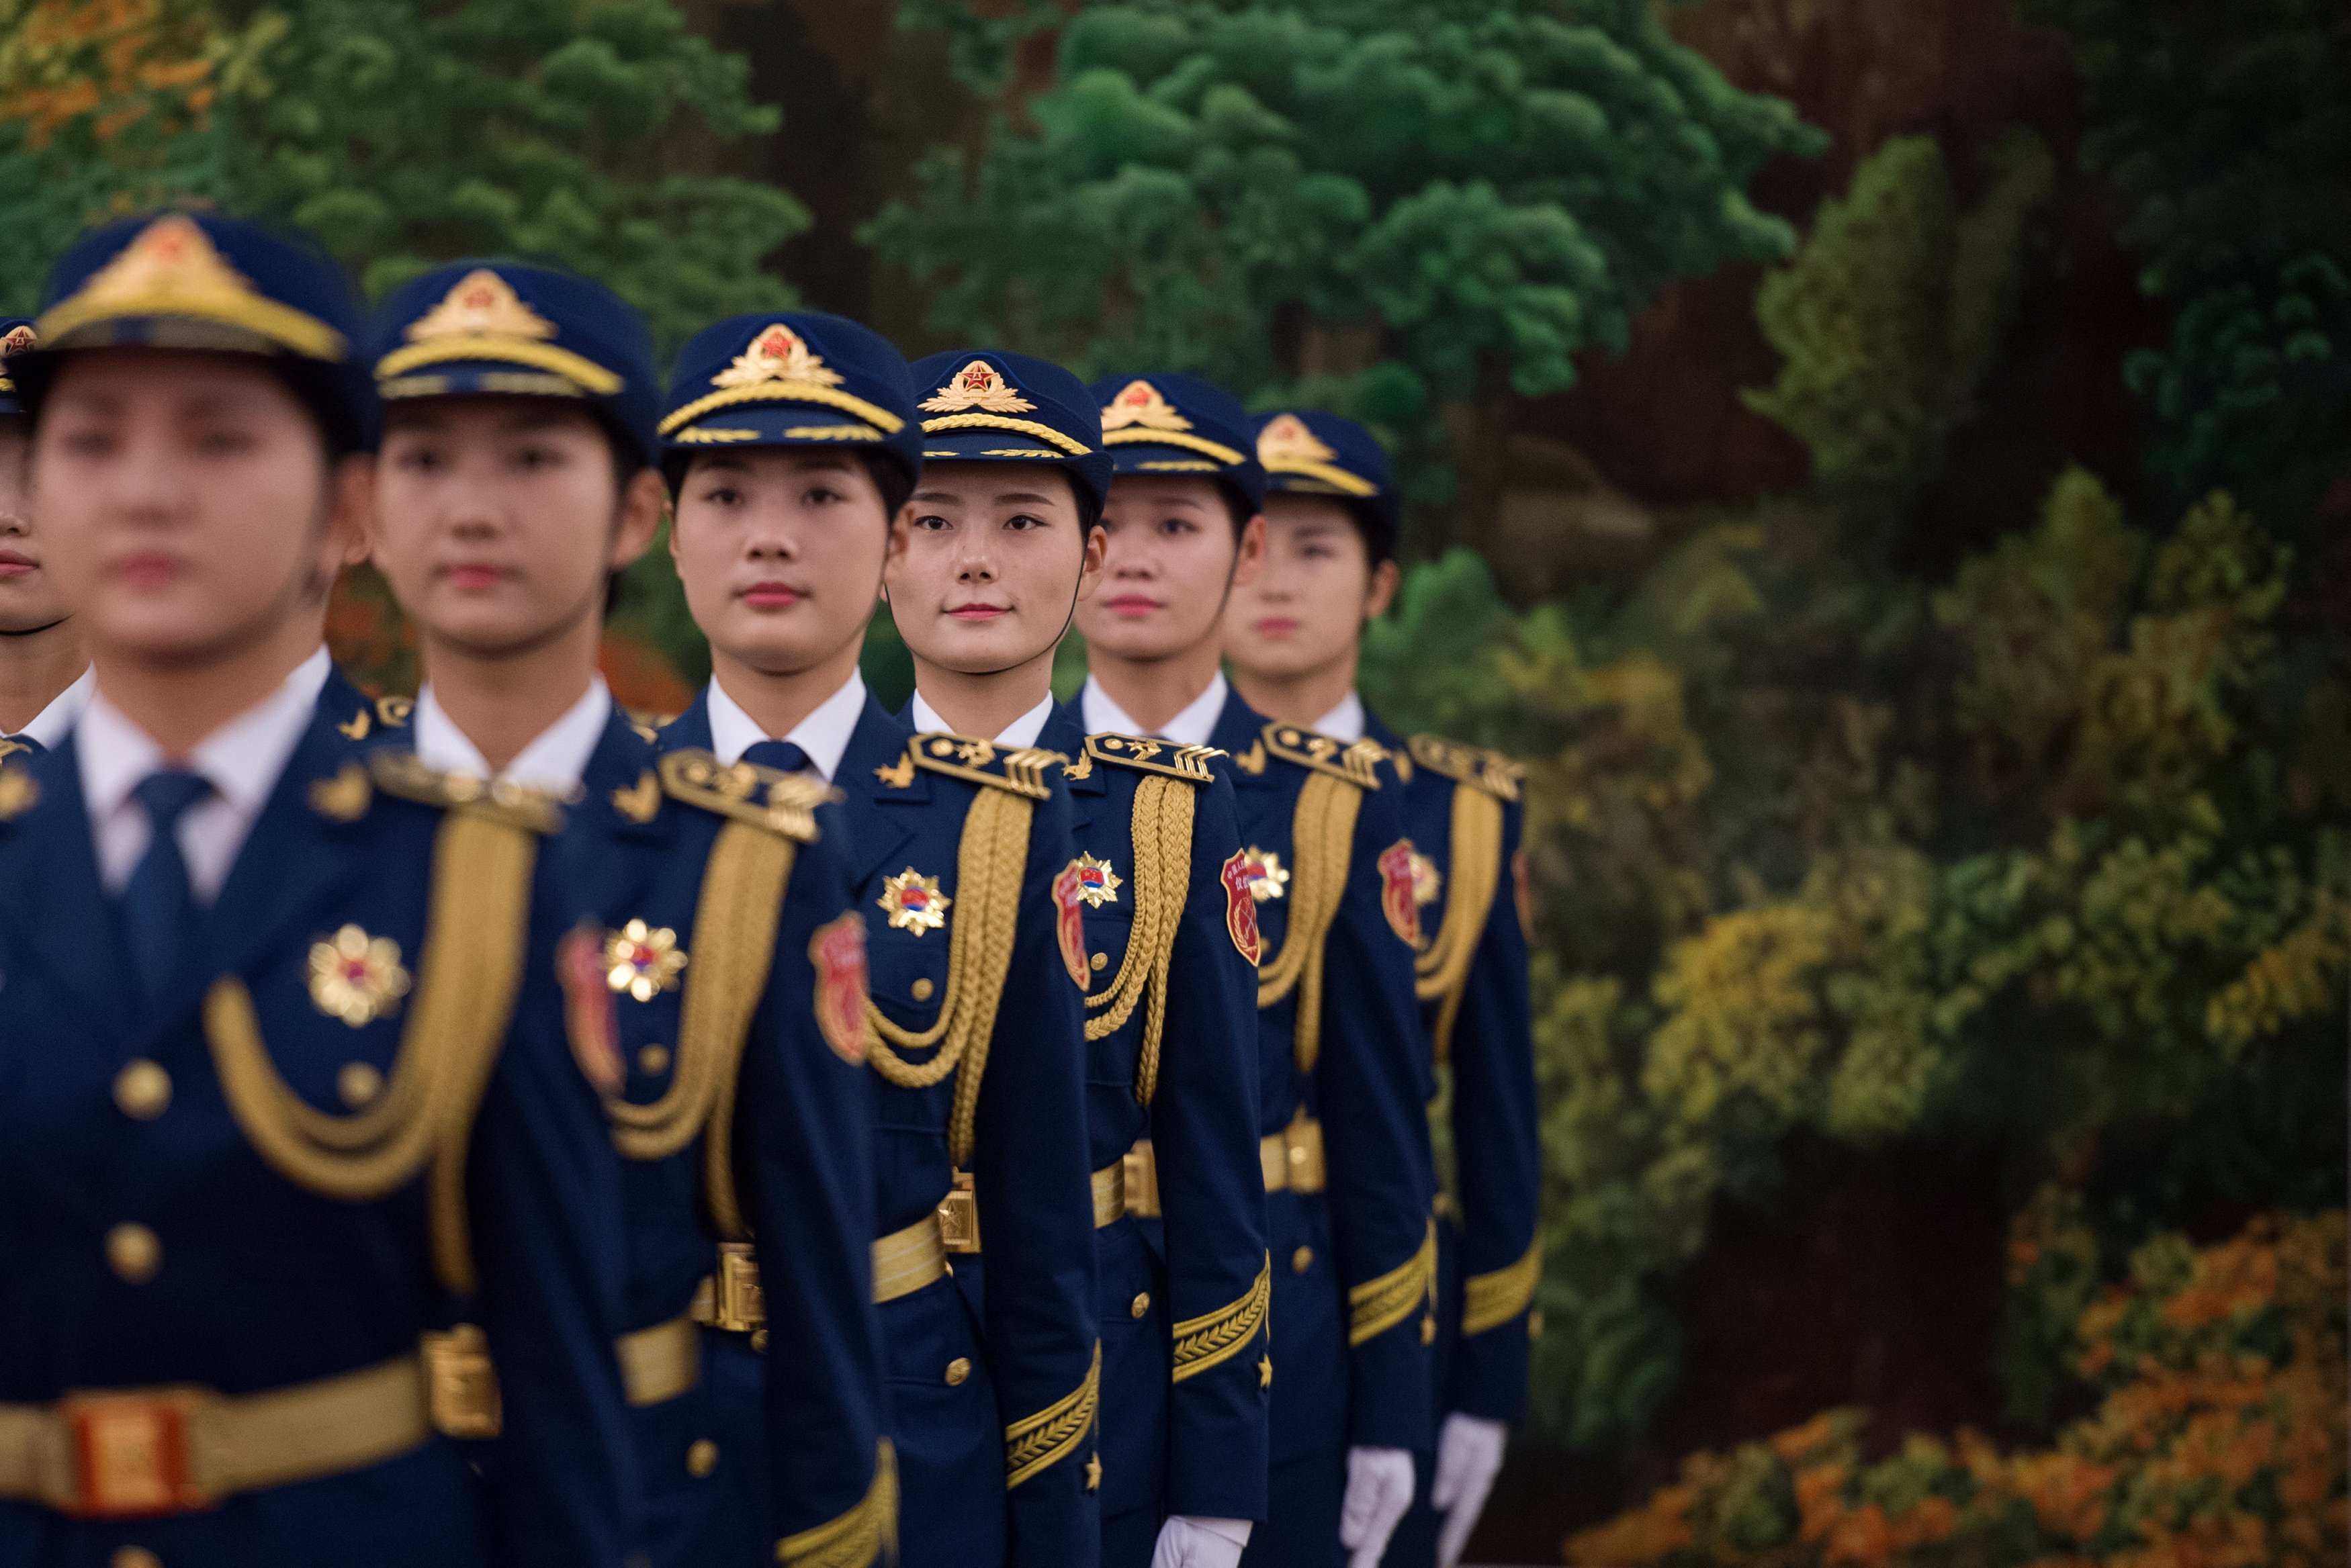 مراسم استقبال رسمية للسيسى فى بكين  (7)